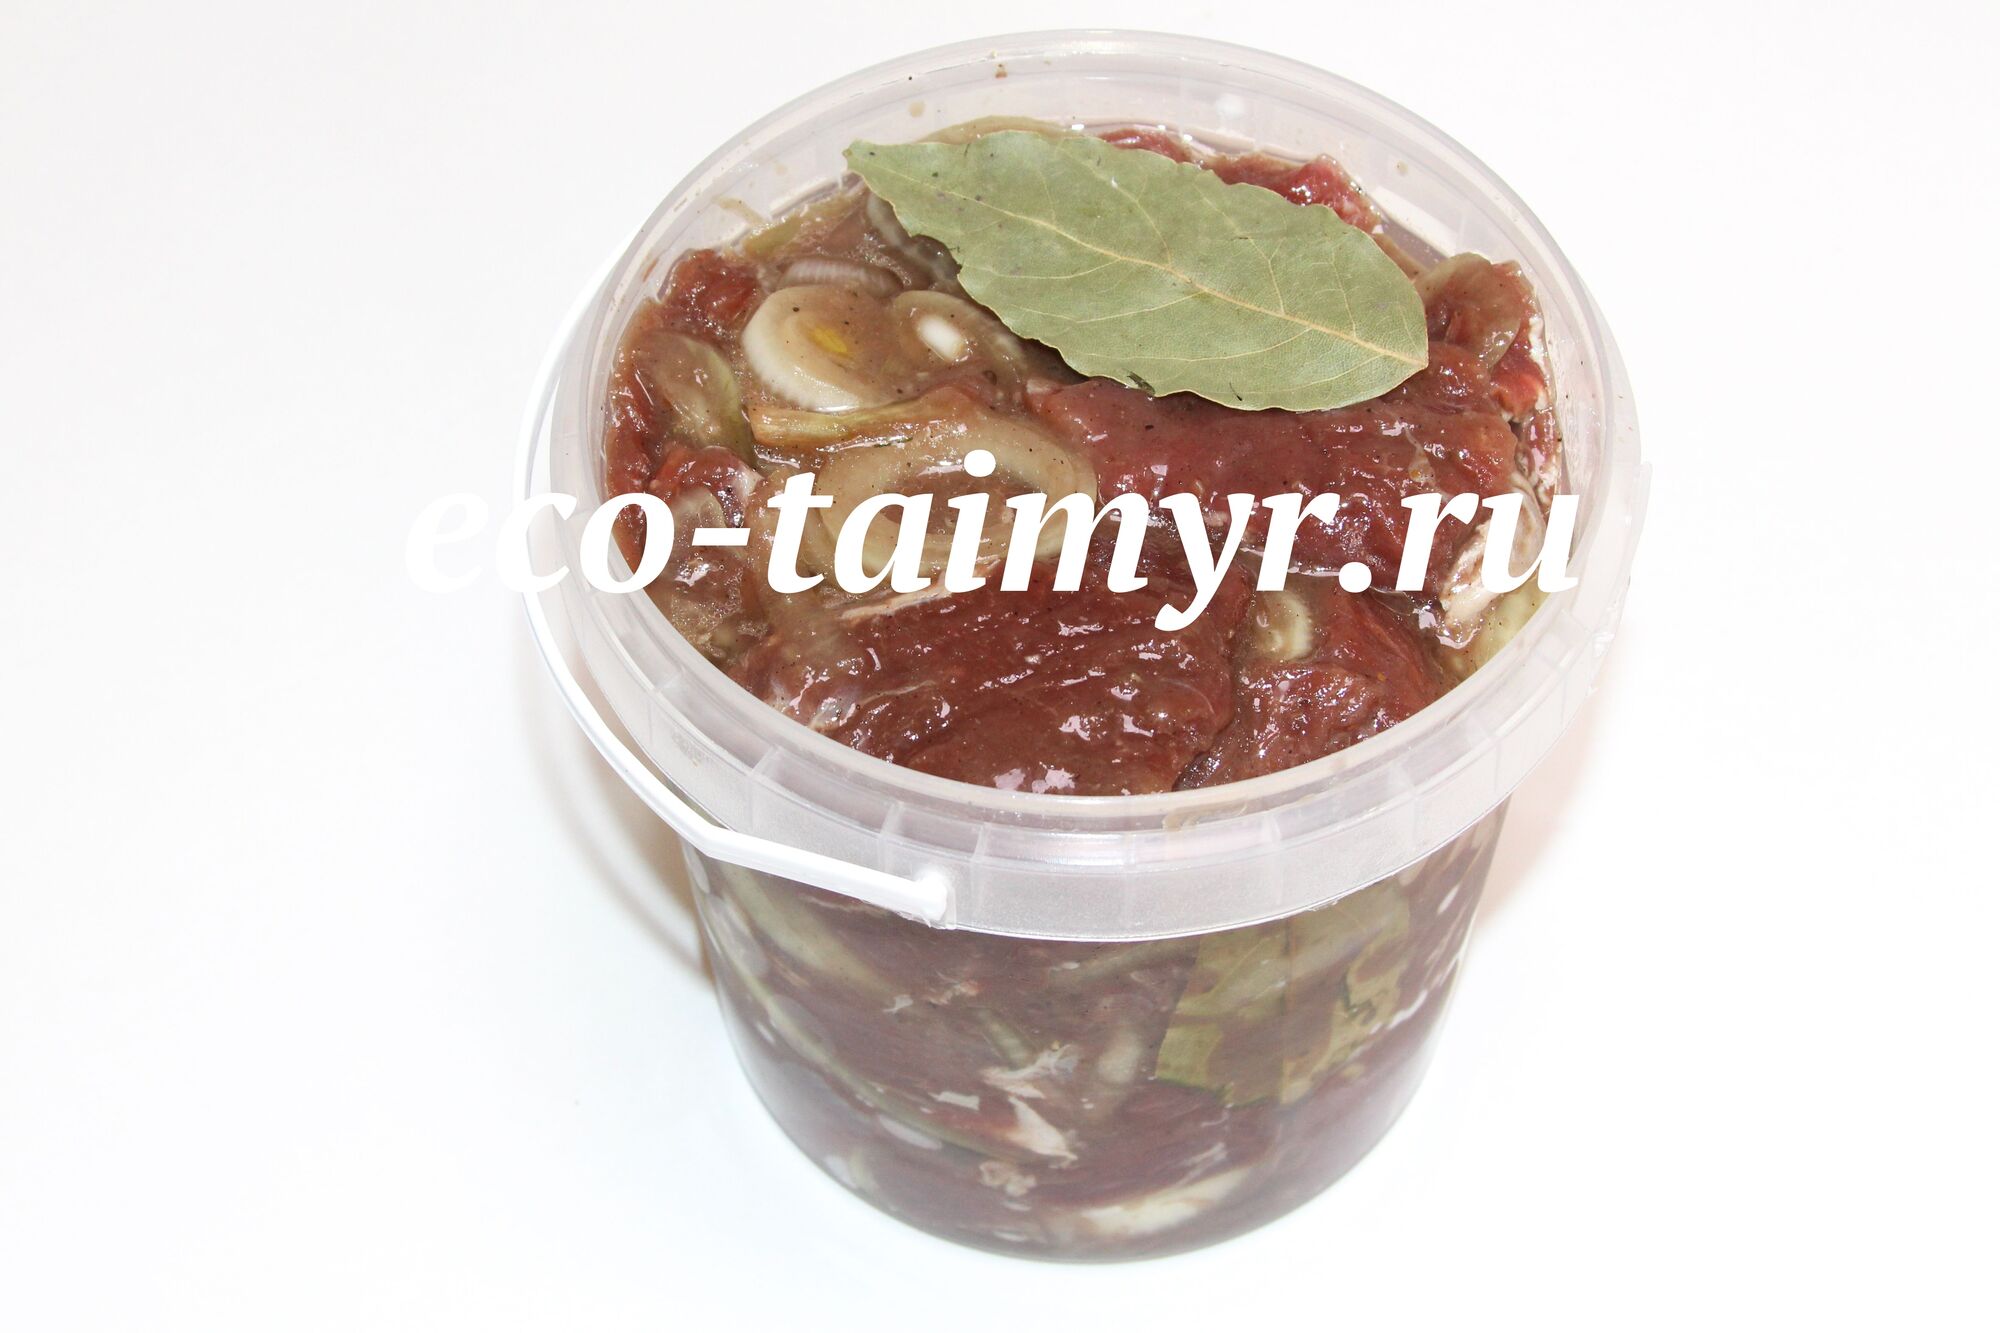 Шашлык из оленины в маринаде с луком и лавровым листом, свежемороженый